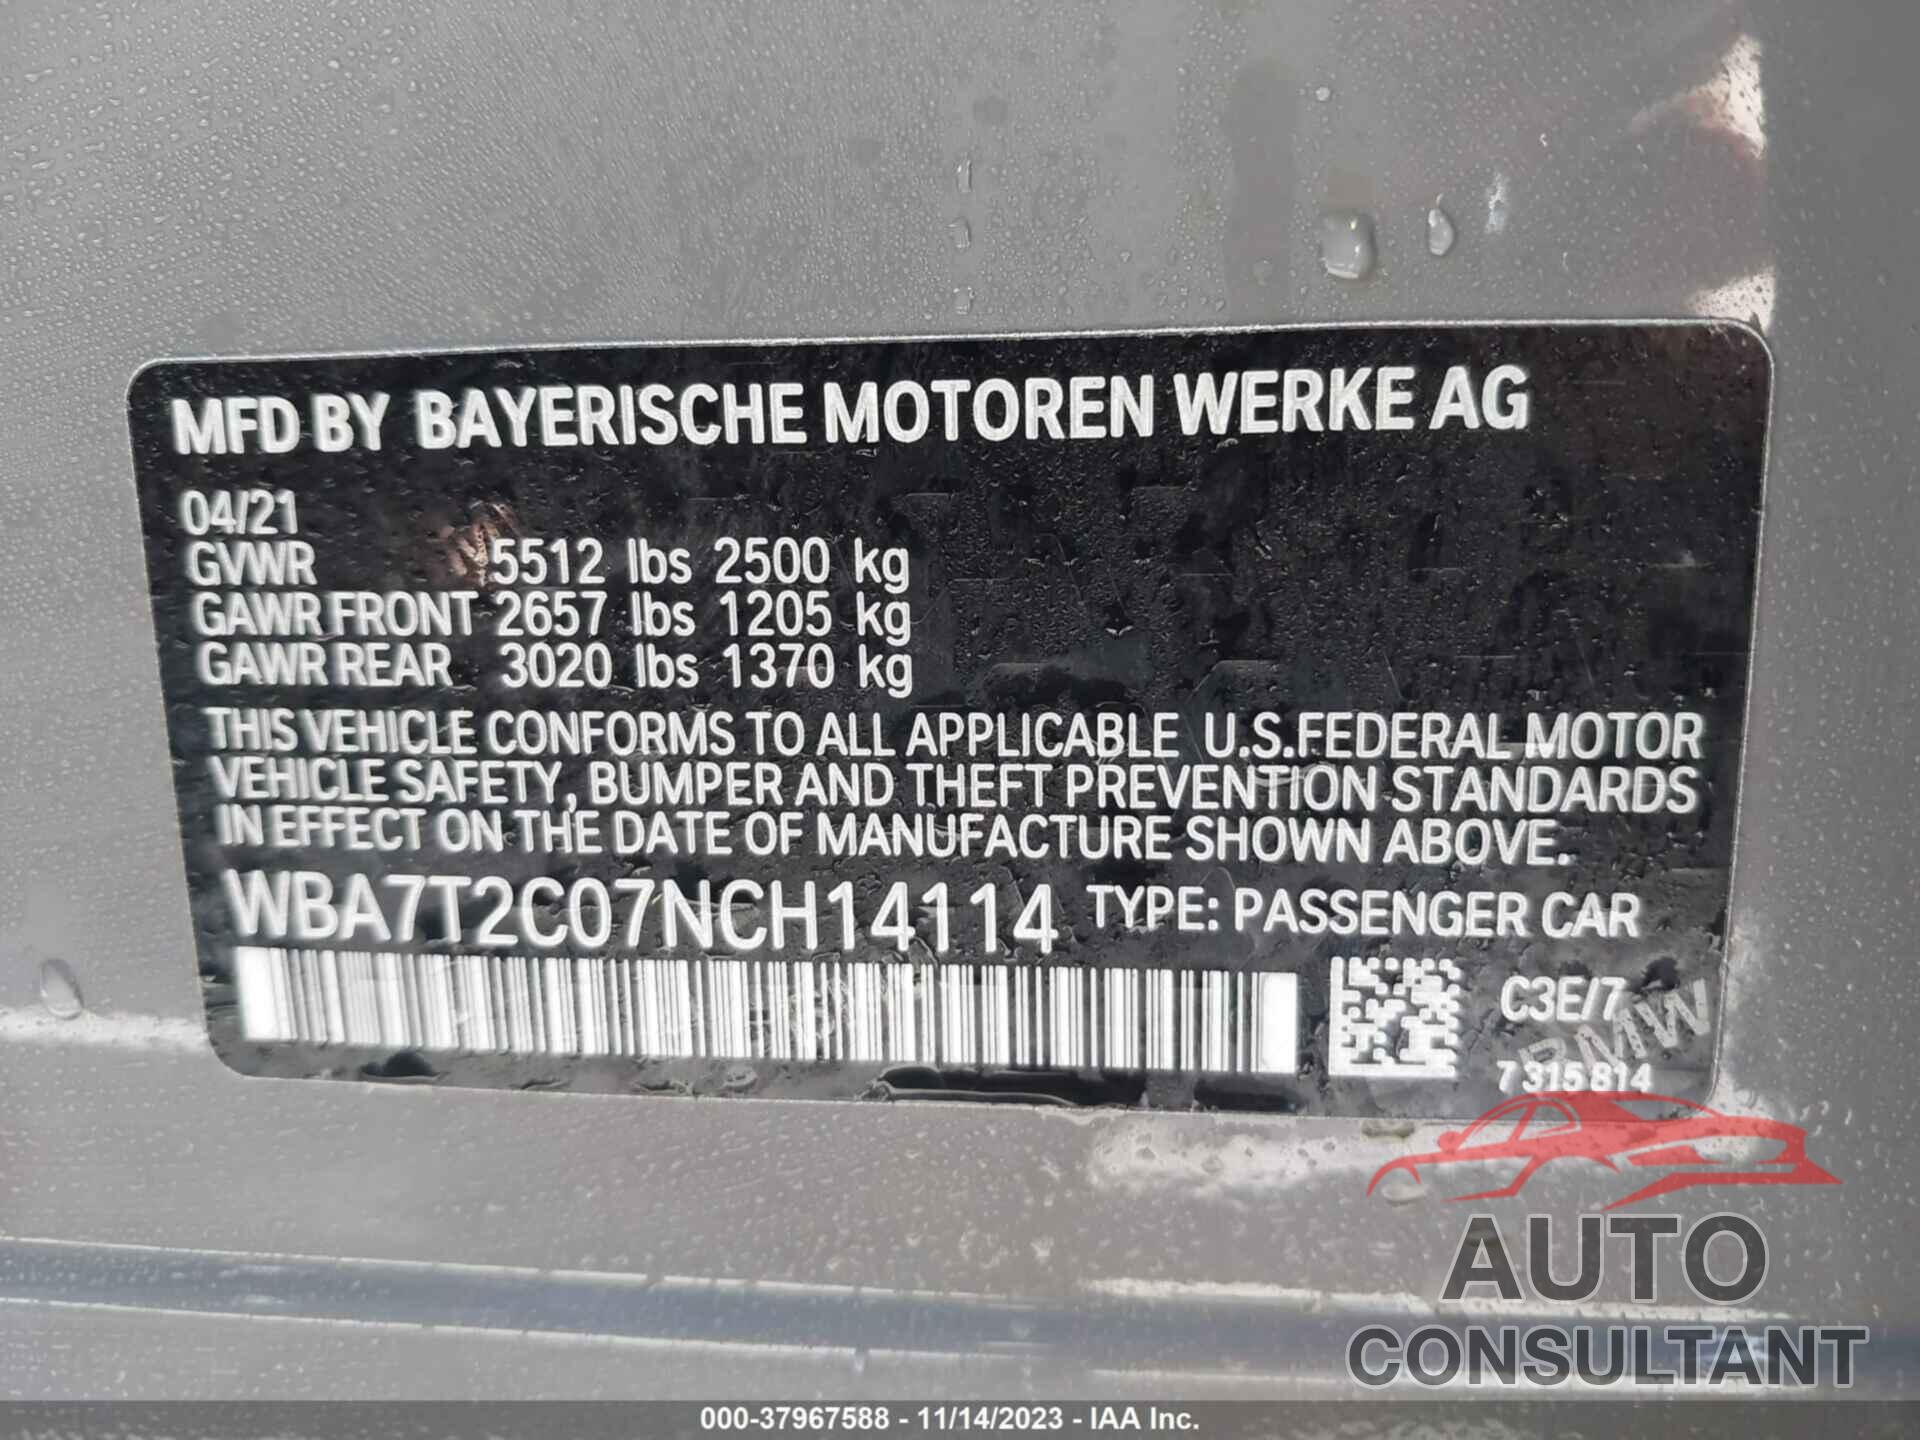 BMW 740I 2022 - WBA7T2C07NCH14114